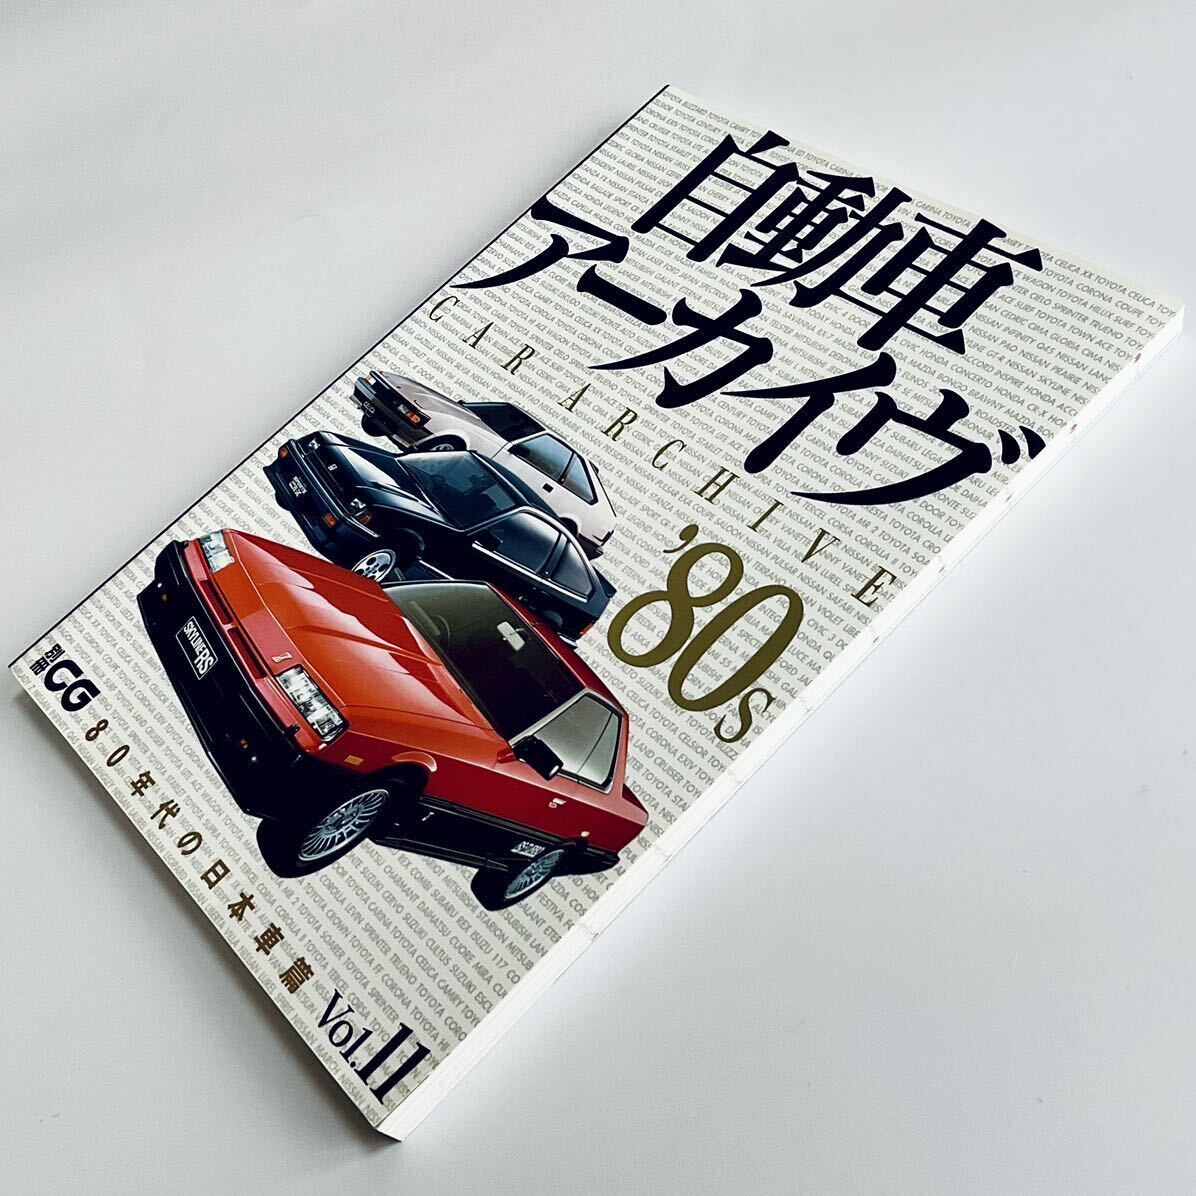 [ワンオーナー品 殆んど読んでいません] 別冊CG 自動車アーカイヴ Vol.11 / 80年代の日本車篇 FC3S ランタボ シャルマン リベルタビラの画像1